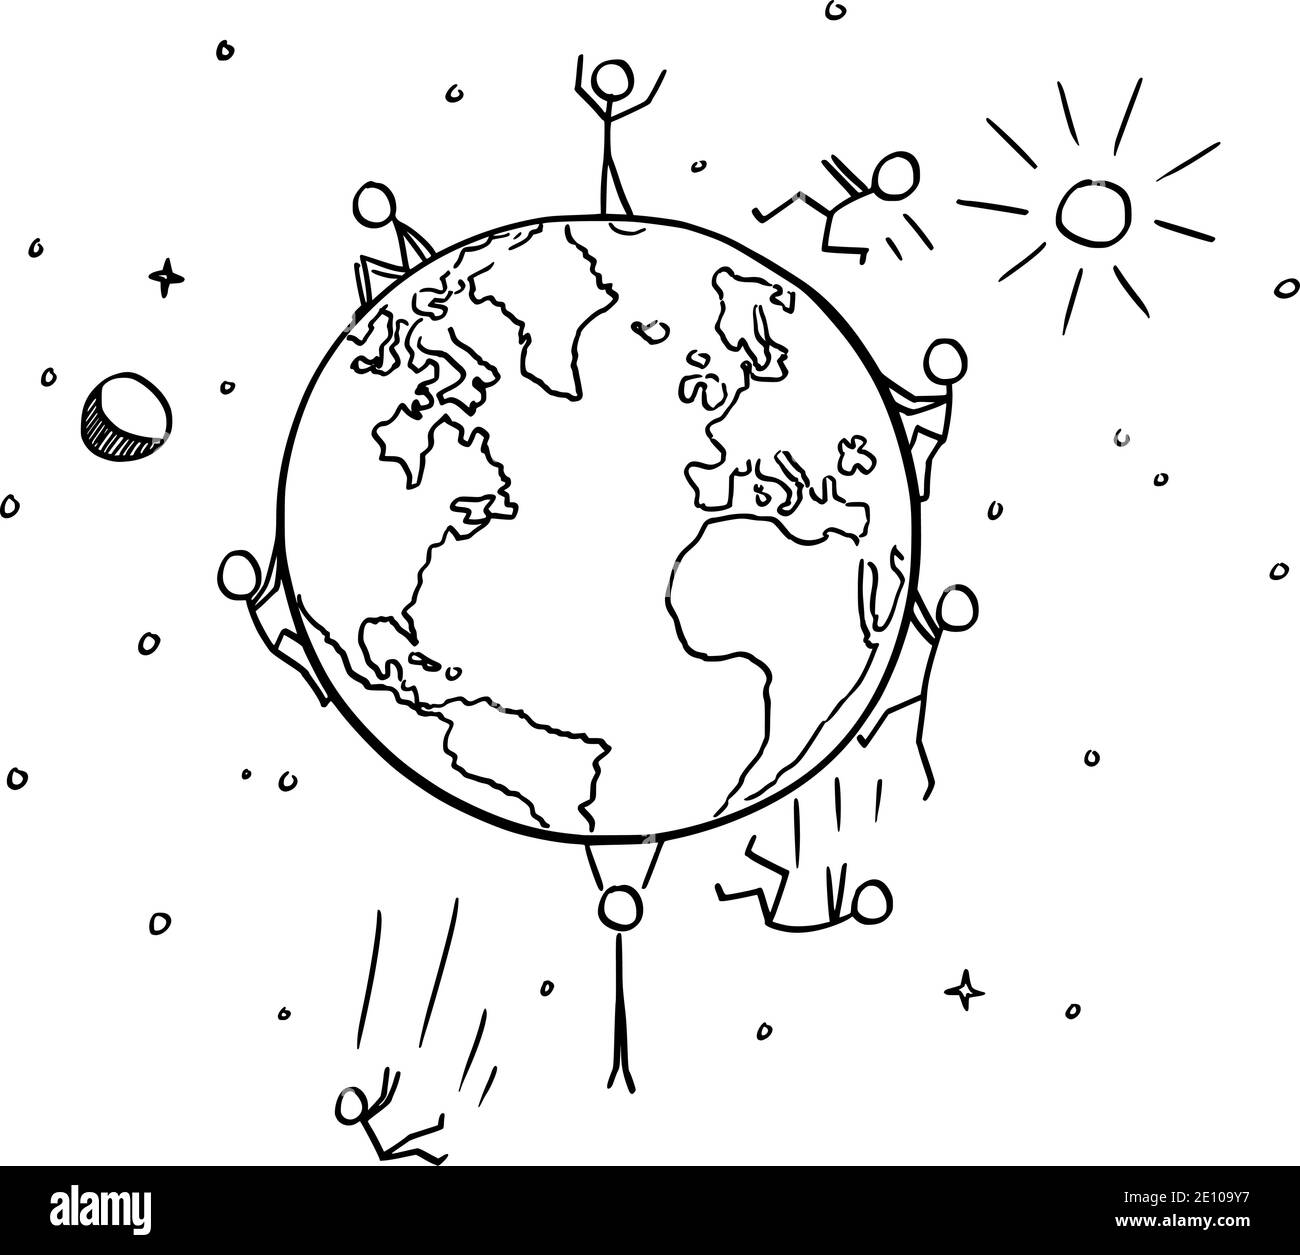 Vektor Cartoon Stick Figur Abbildung von Menschen fallen von sphärischen Planeten Erde. Flache Erde Verschwörung oder Theorie. Stock Vektor